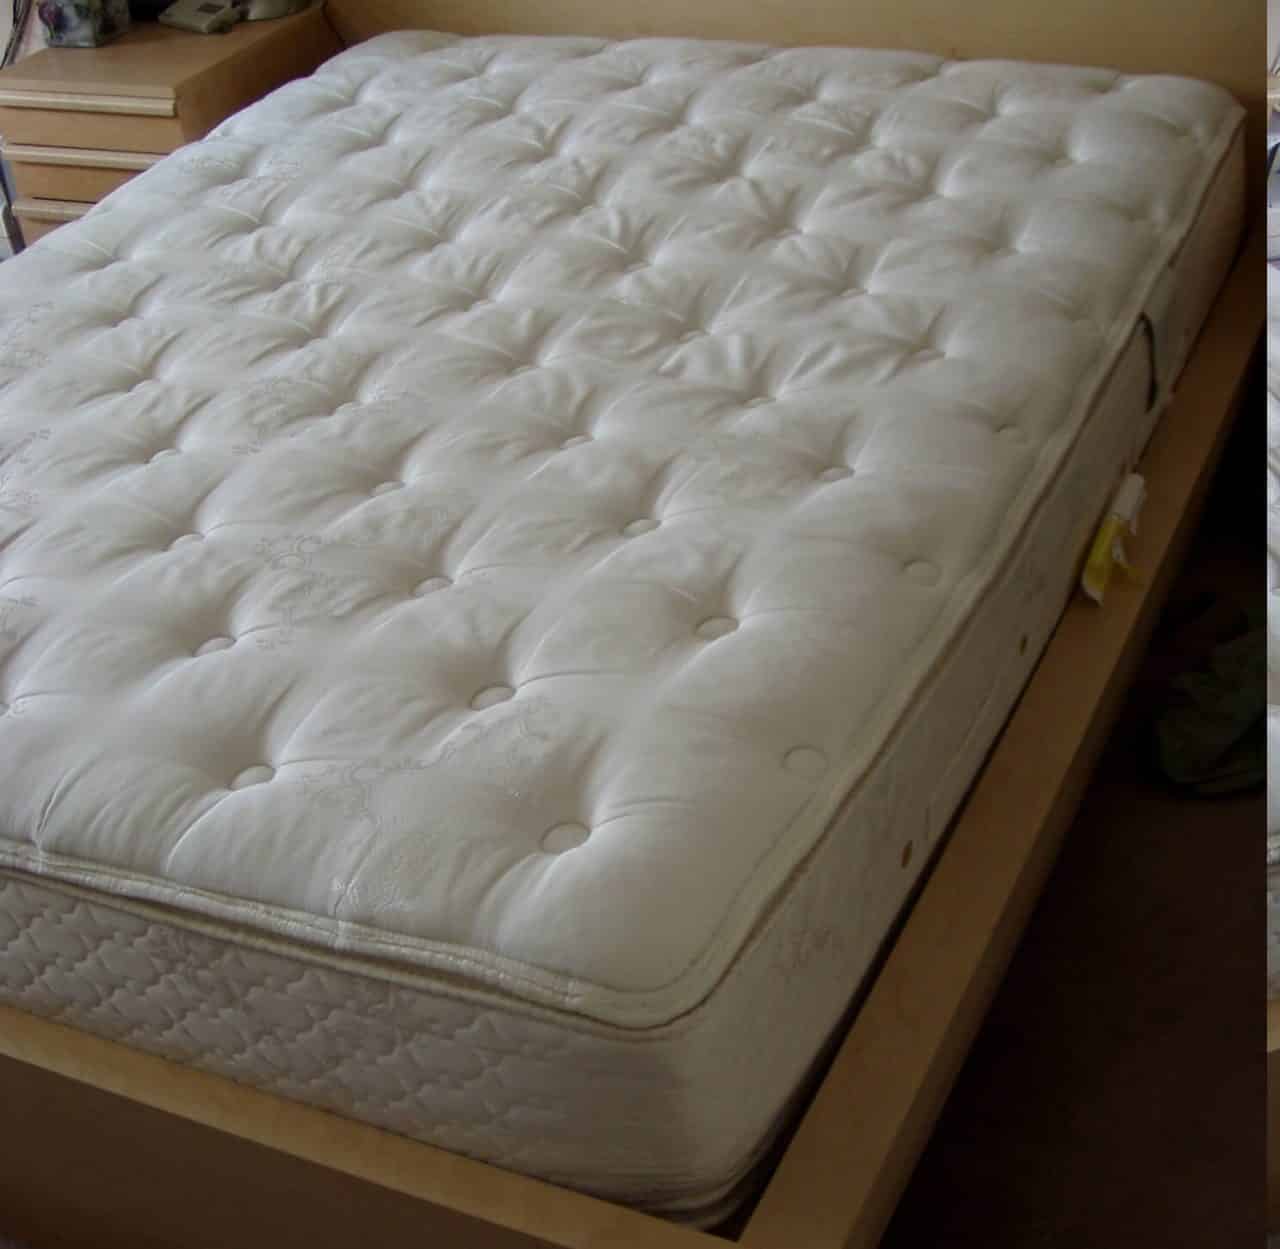 A pillowtop mattress (U.S. size "queen")